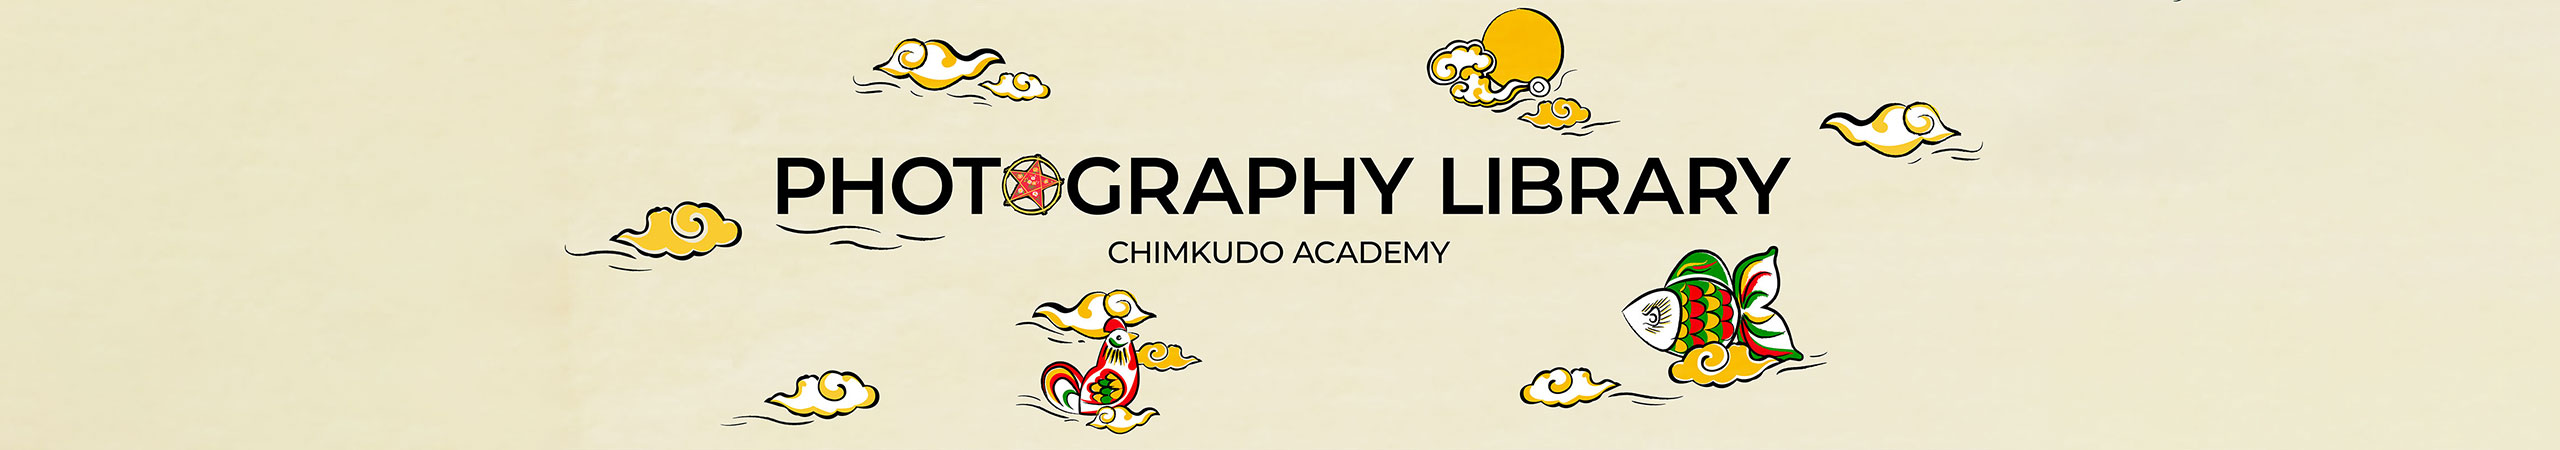 Thư viện chụp ảnh sản phẩm, quảng cáo Chimkudo